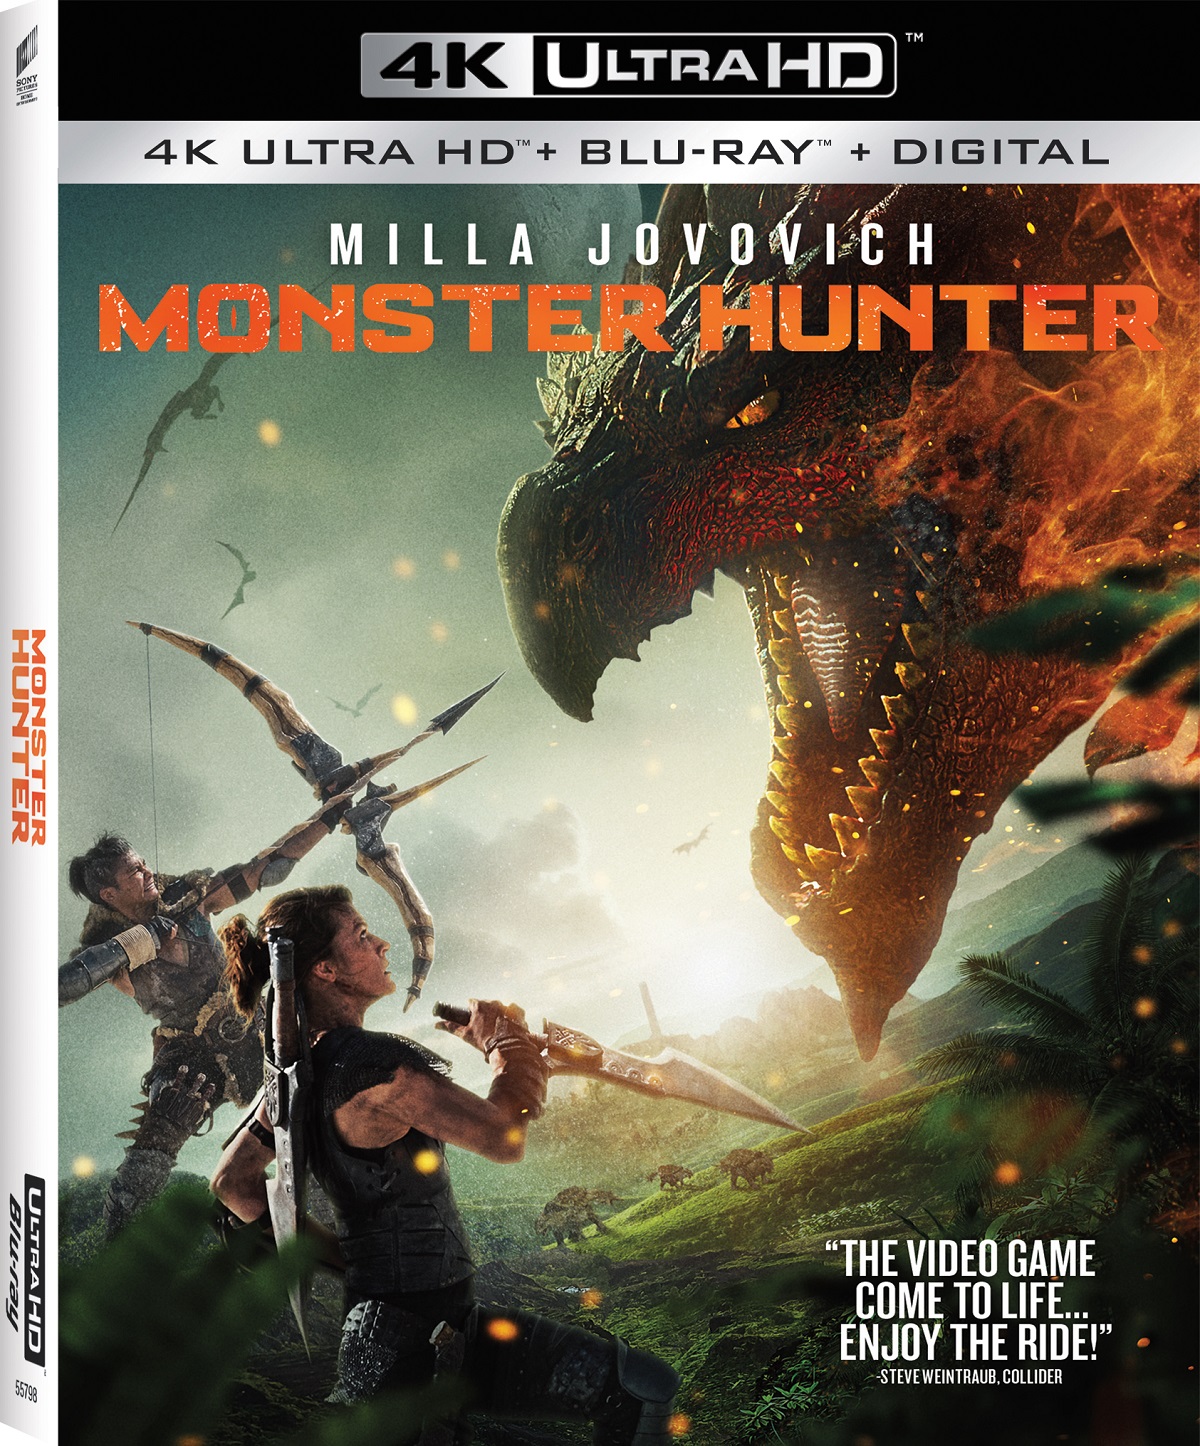 Monster Hunter Blu-ray DVD release